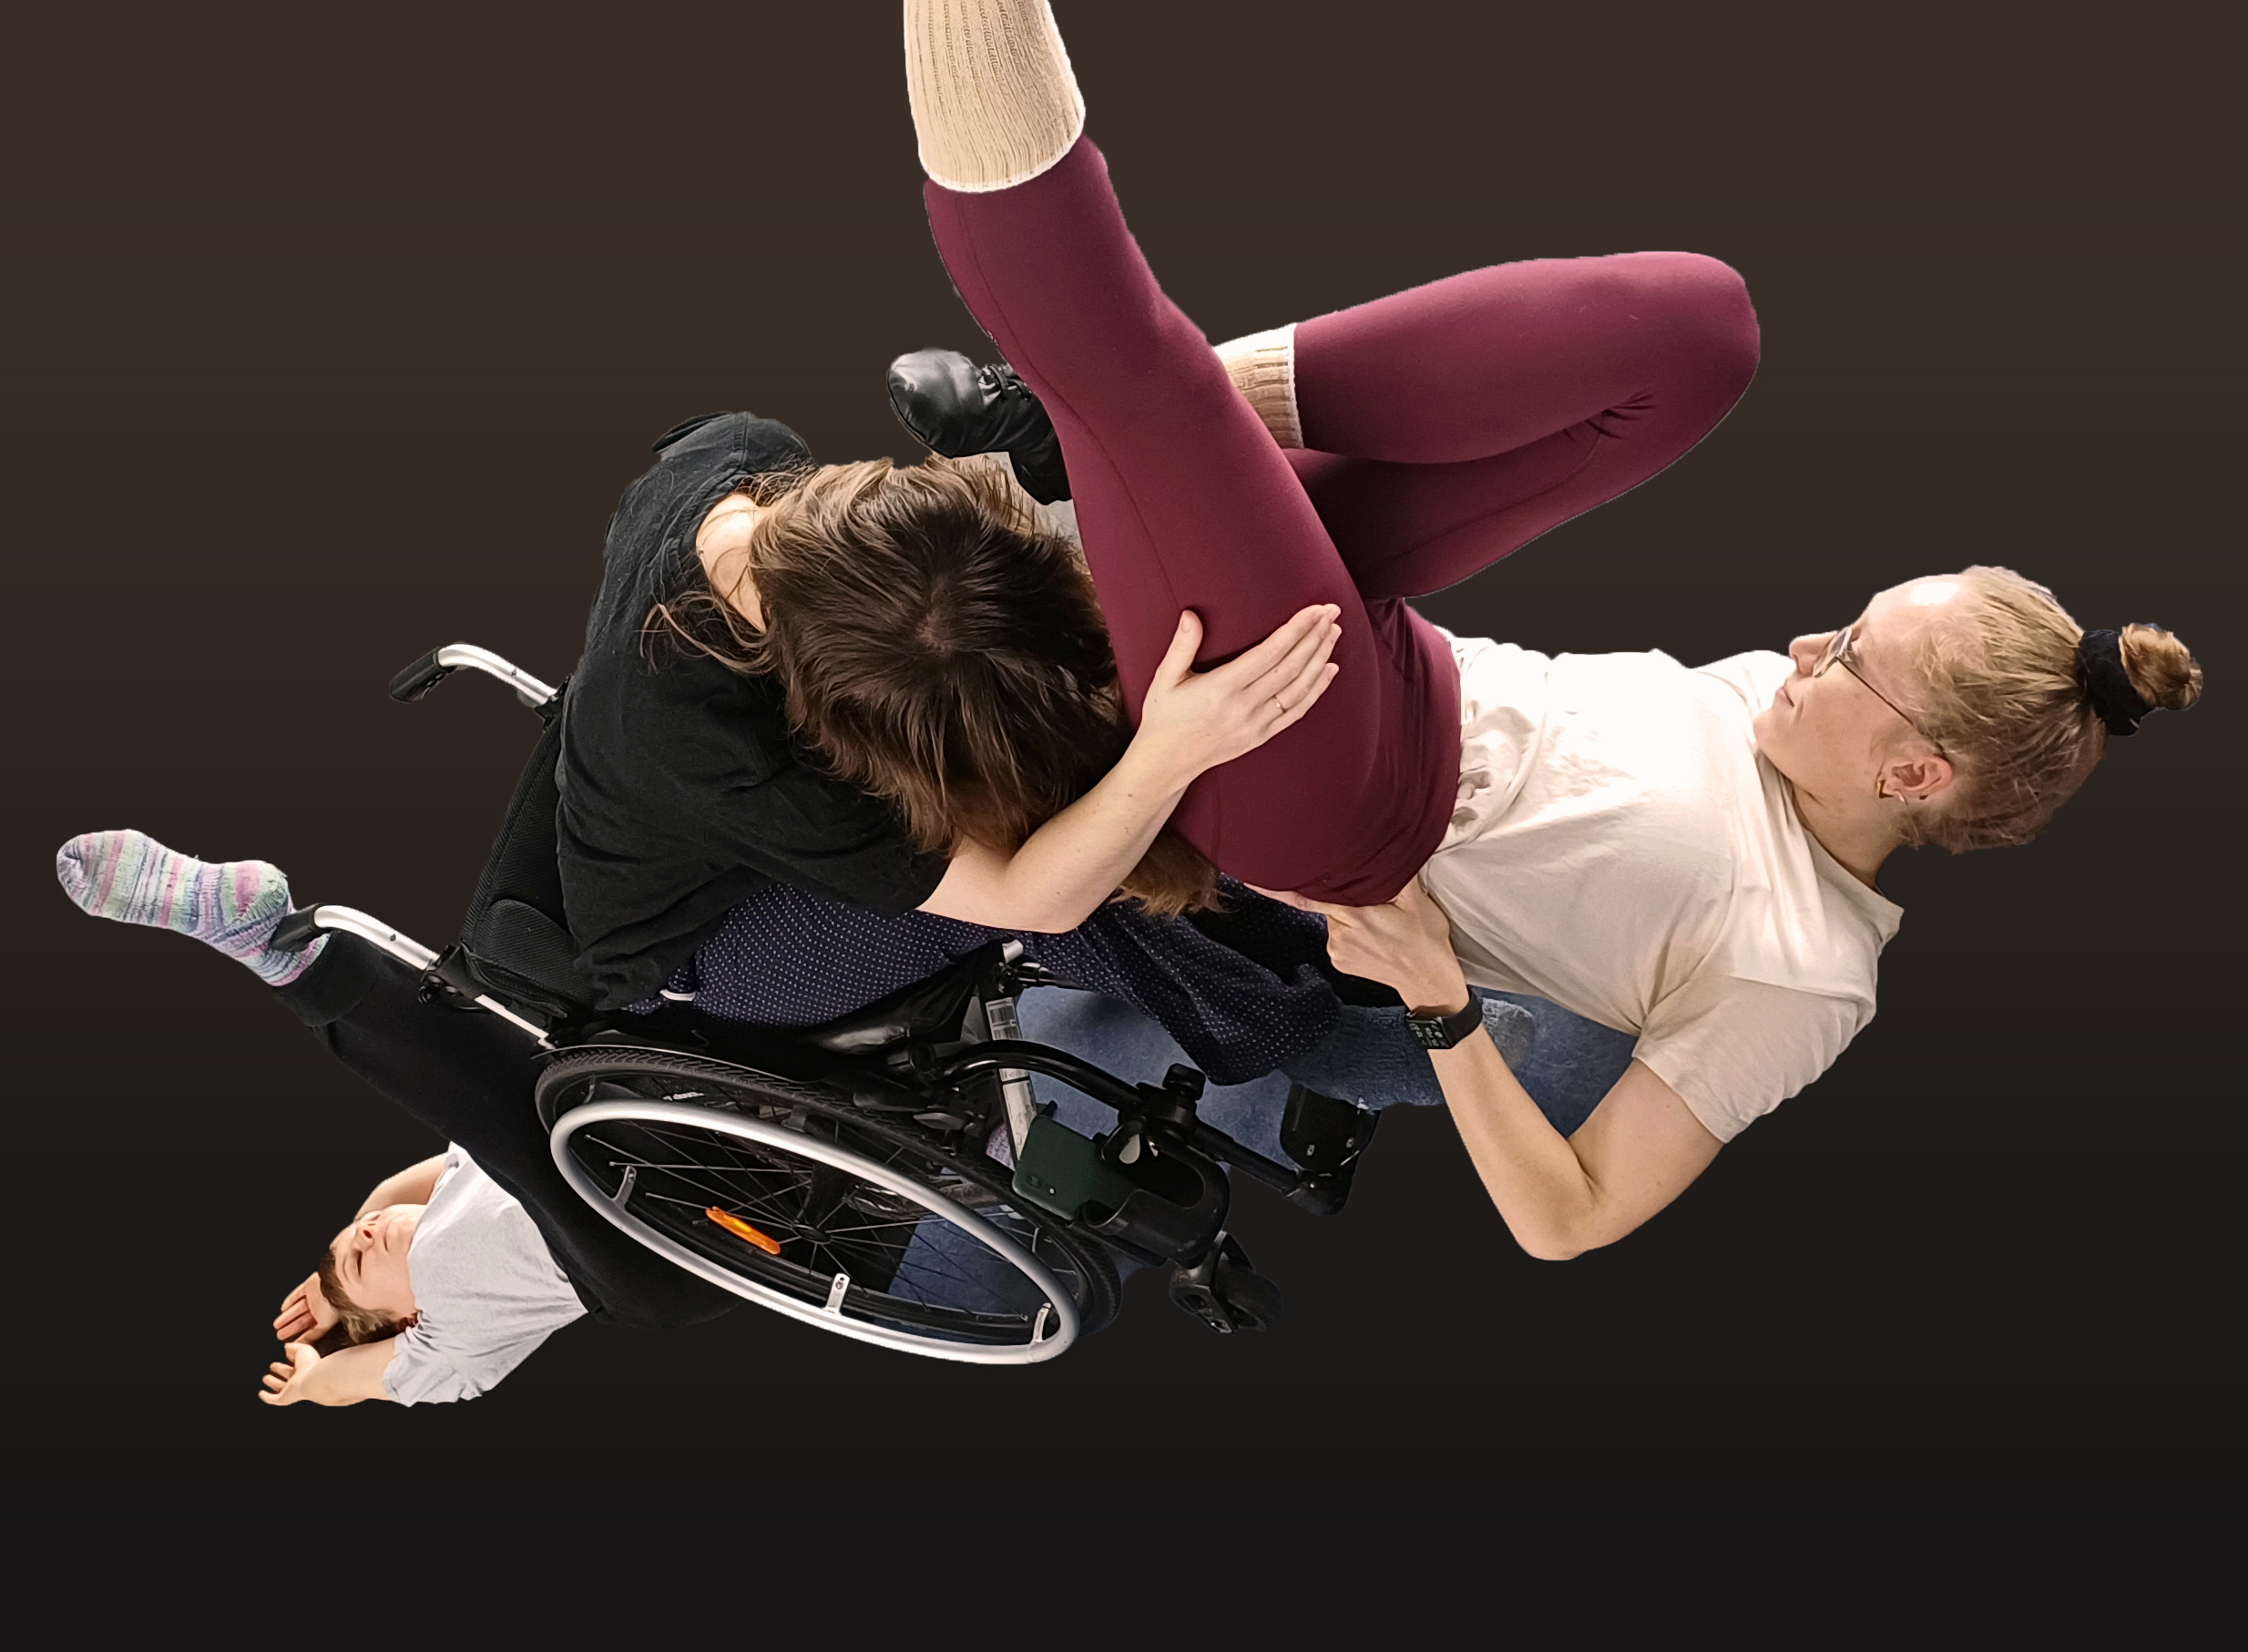 Una persona en silla de ruedas y otra subida encima de la persona en sillas haciendo una figura de danza